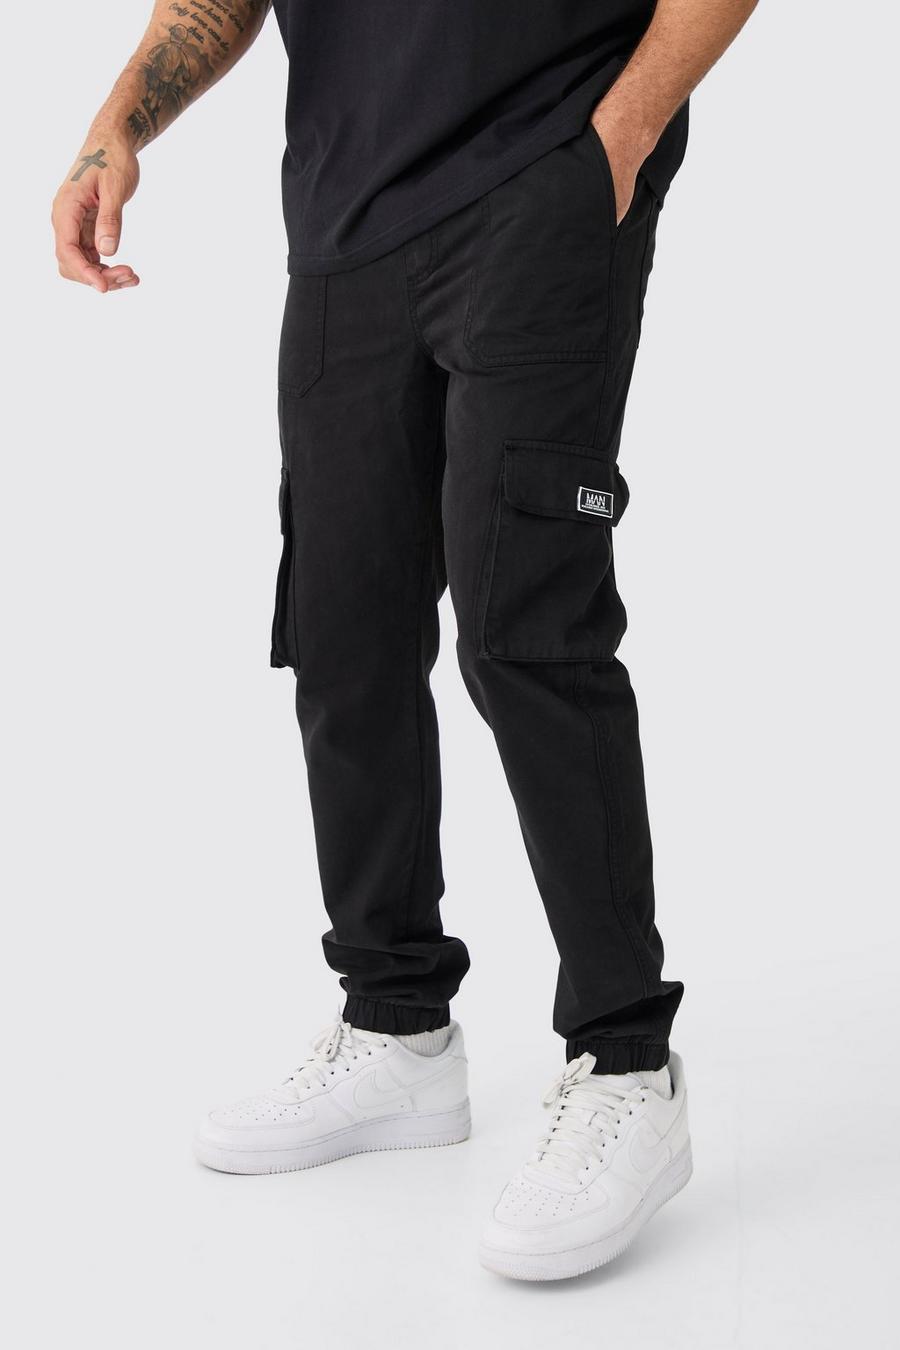 YoungLA Men's Jogger Sweatpants with Pockets Looser Fit Elastic